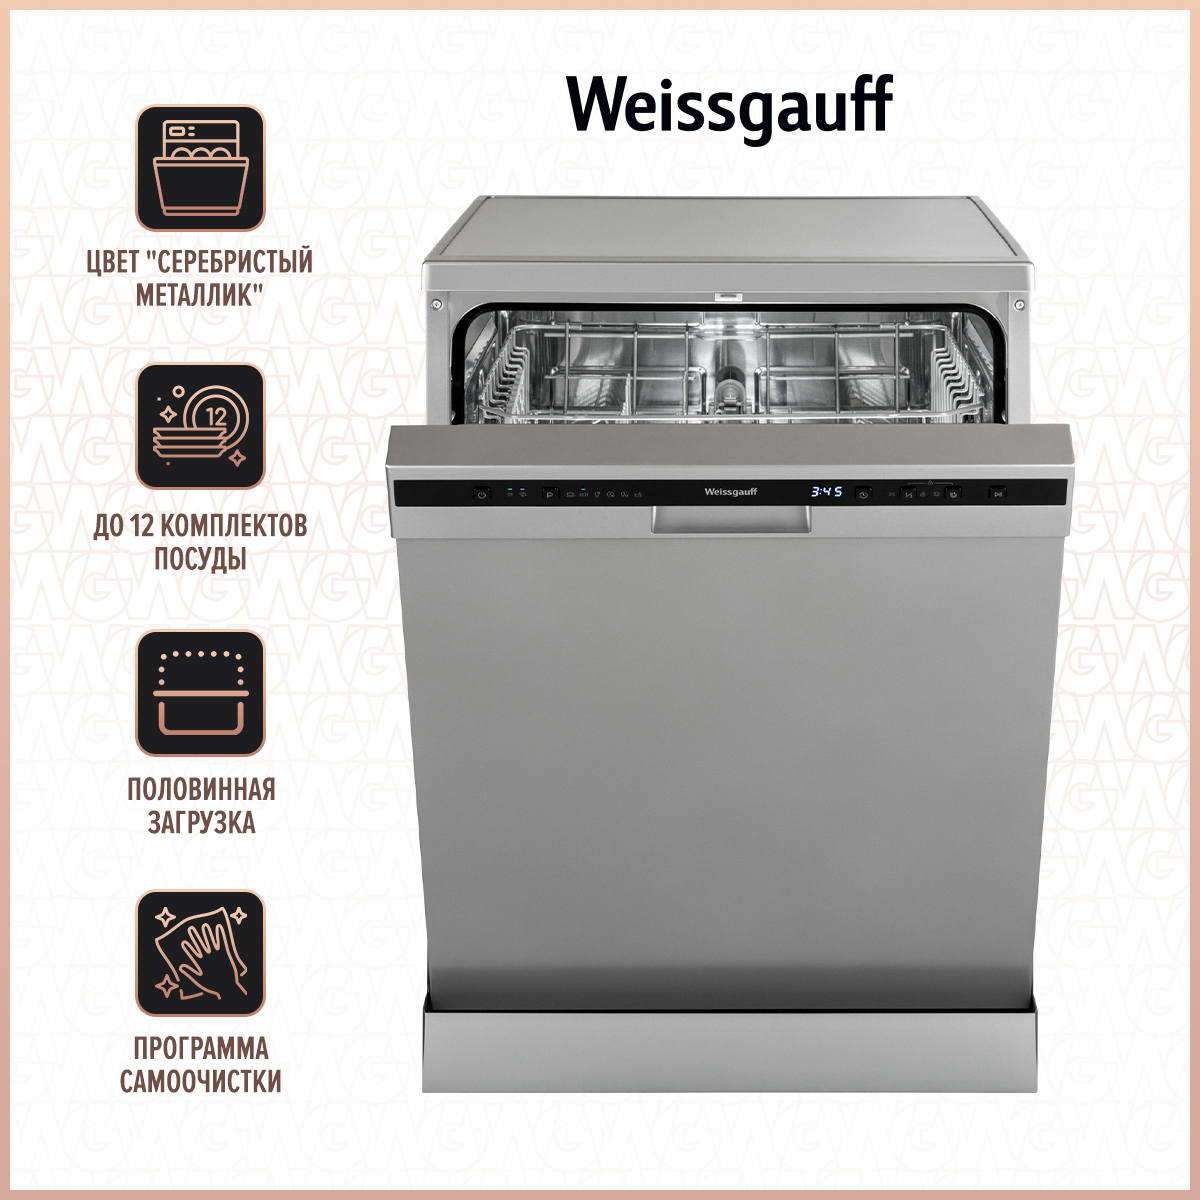 Посудомоечная машина Weissgauff DW 6026 D Silver серебристый посудомоечная машина weissgauff tdw 4006 s серебристый